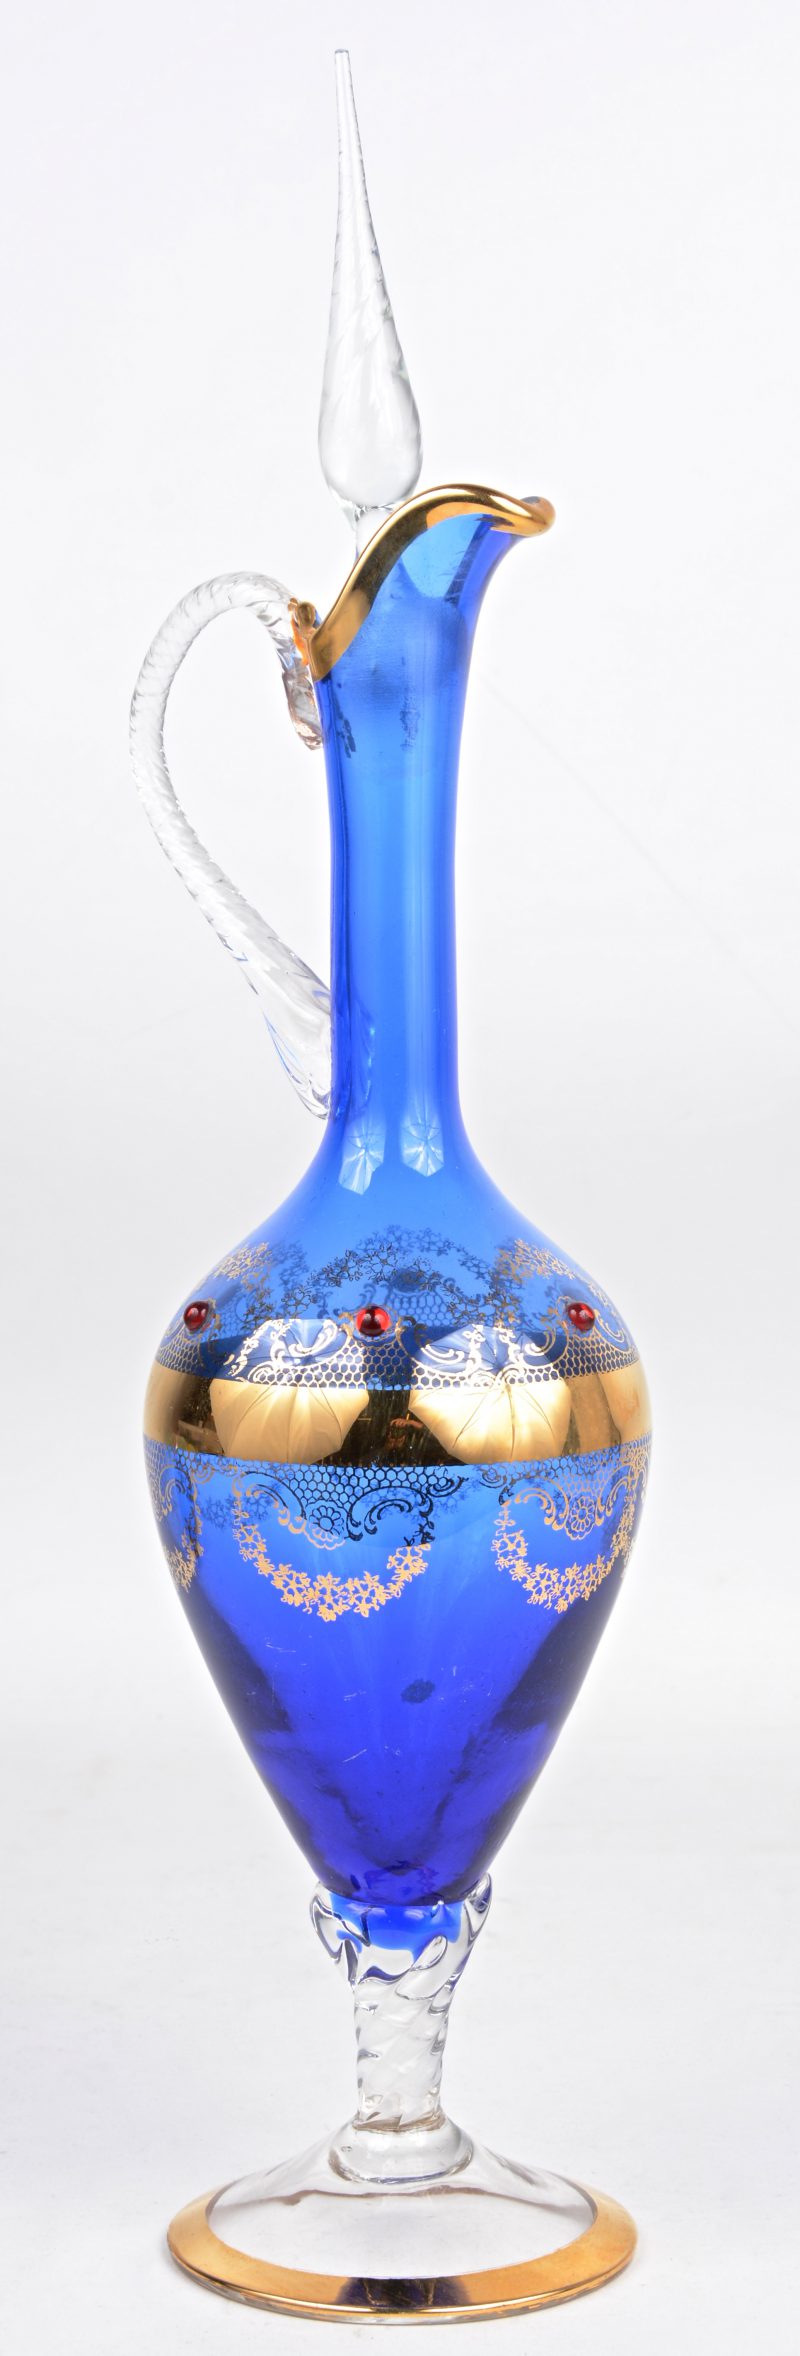 Een karafje van blauw en kleurloos Muranoglas met een verguld decor.